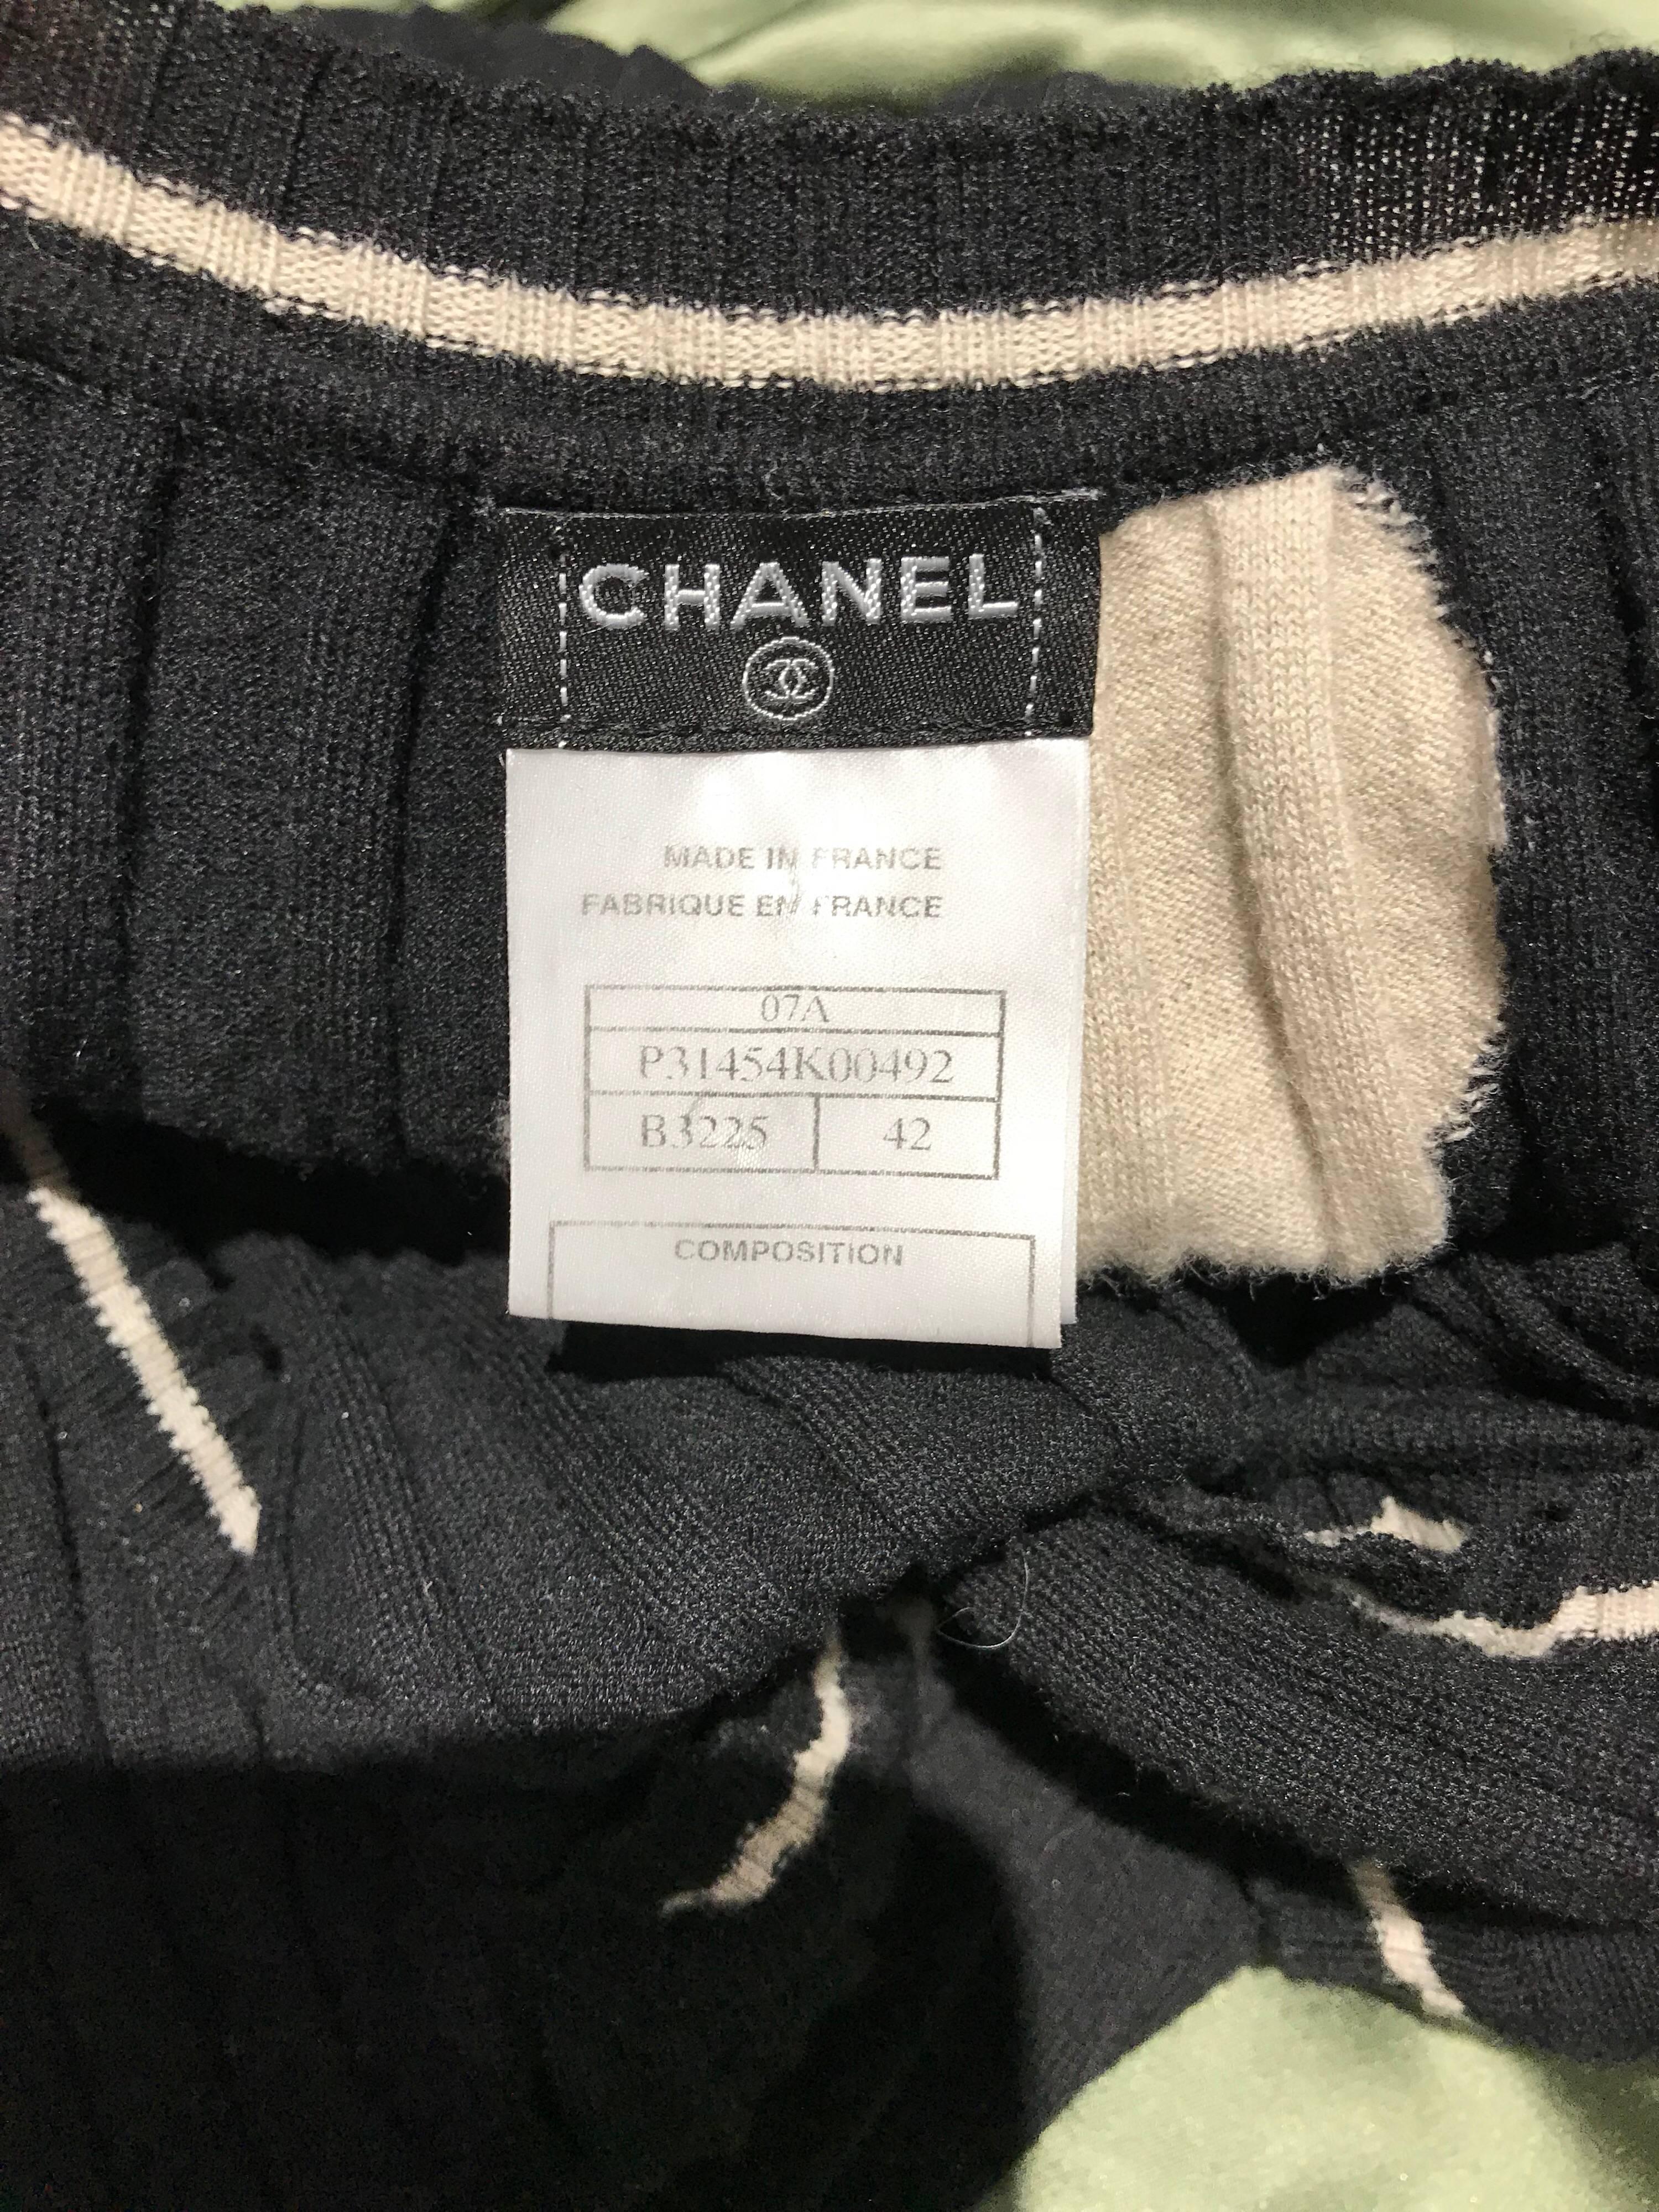 Chanel Schwarzes und cremefarbenes Kaschmir-Strickkleid mit Cap-Ärmeln
Markiert Größe 42. Passform US 4/6 Small- Medium